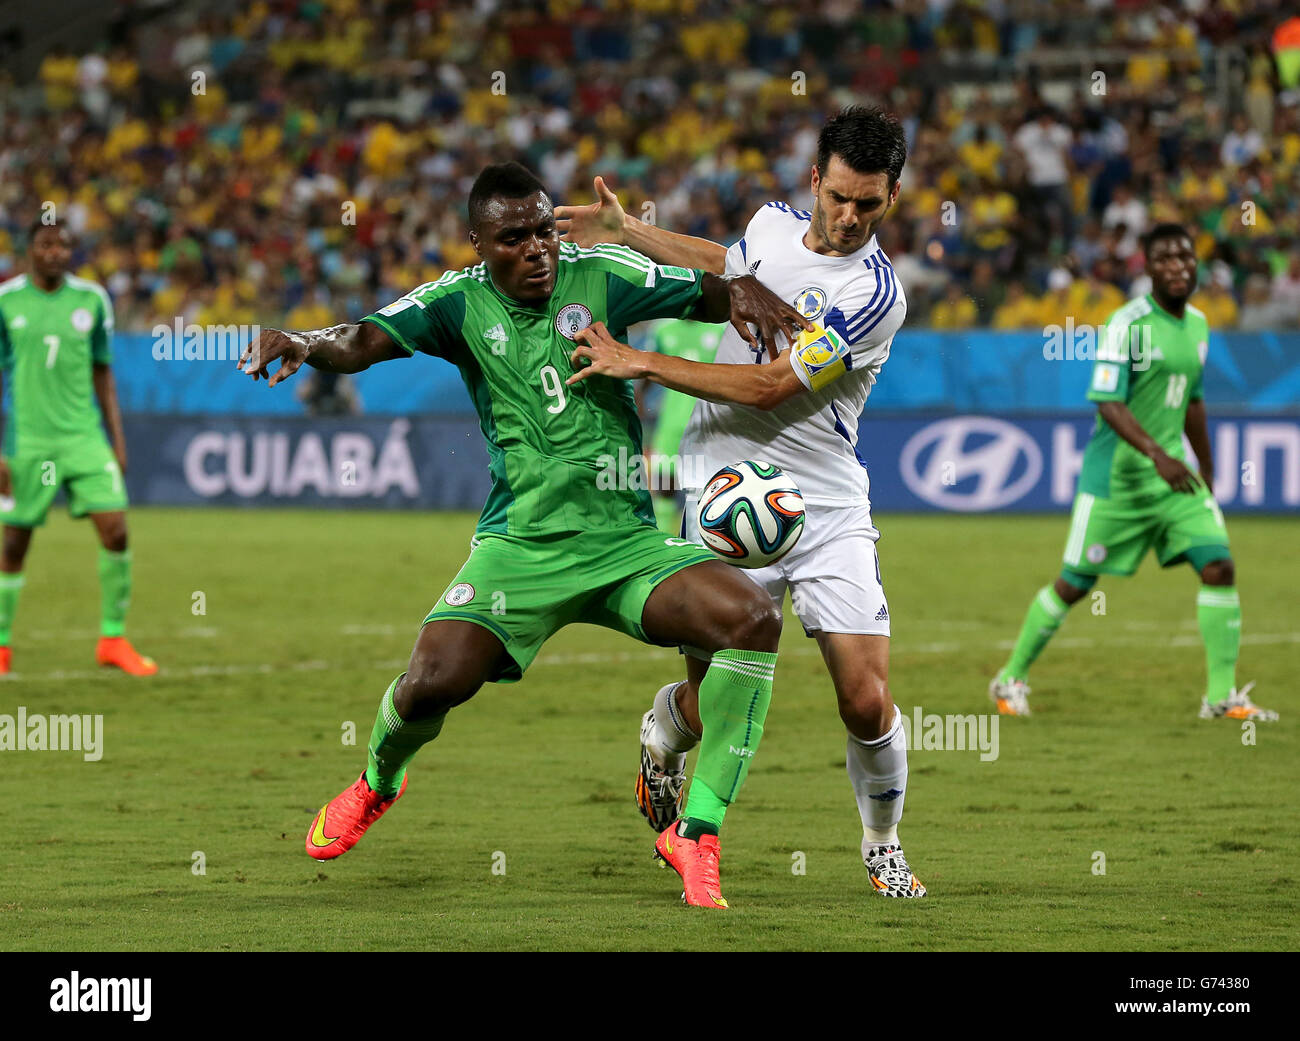 Fußball - FIFA Fußball-Weltmeisterschaft 2014 - Gruppe F - Nigeria - Bosnien und Herzegowina - Arena Pantanal. Der nigerianische Emmanuel Emenike (links) und der bosnisch-herzegowinische Emir Spahic kämpfen um den Ball Stockfoto